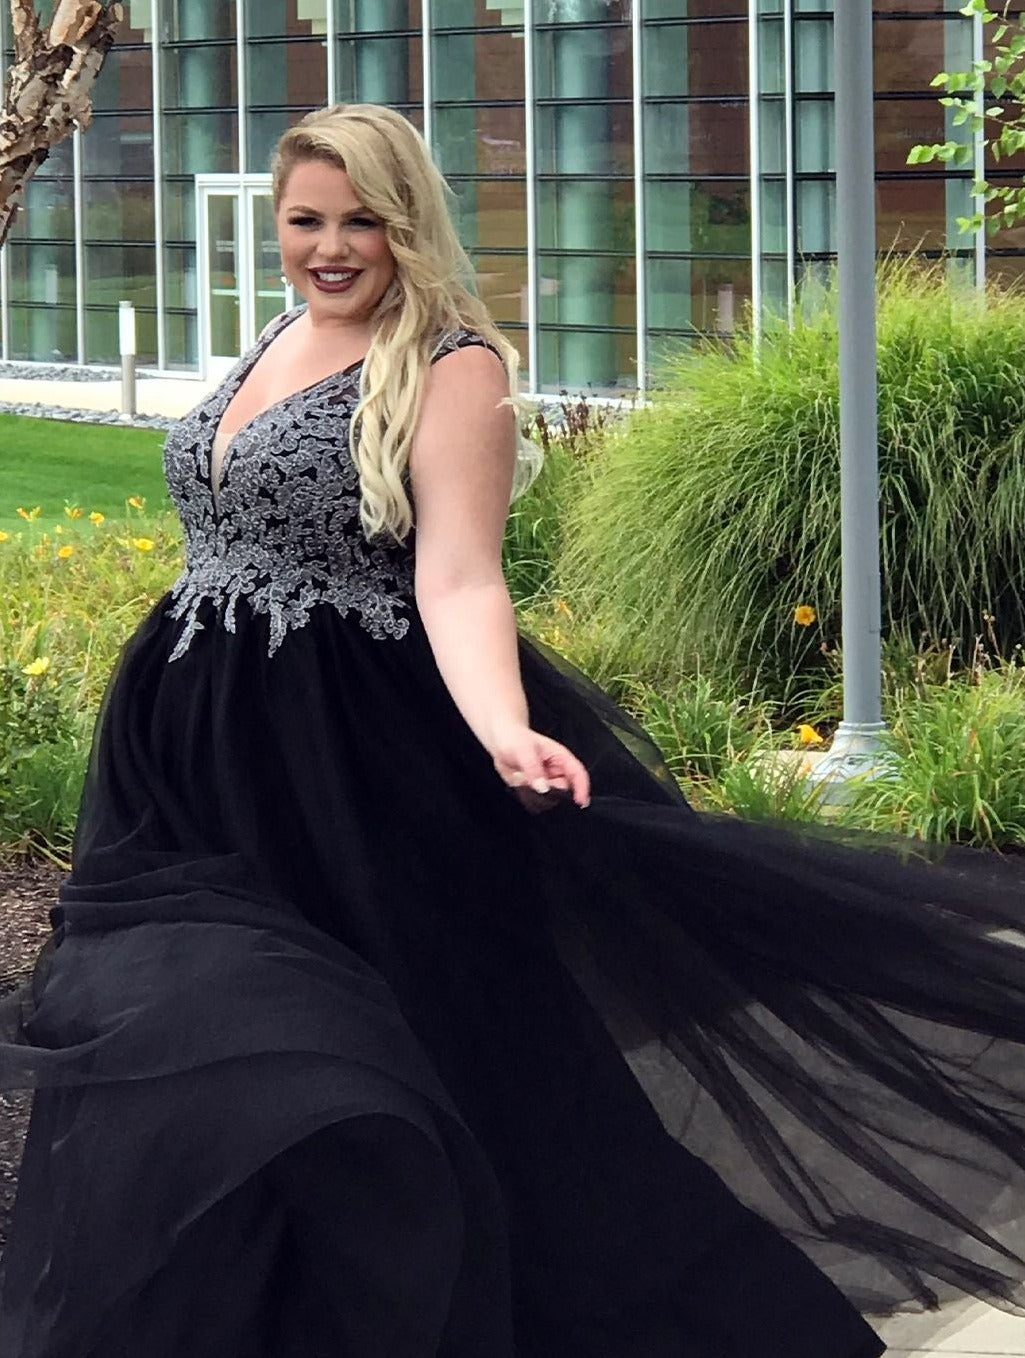 plus size black prom dresses